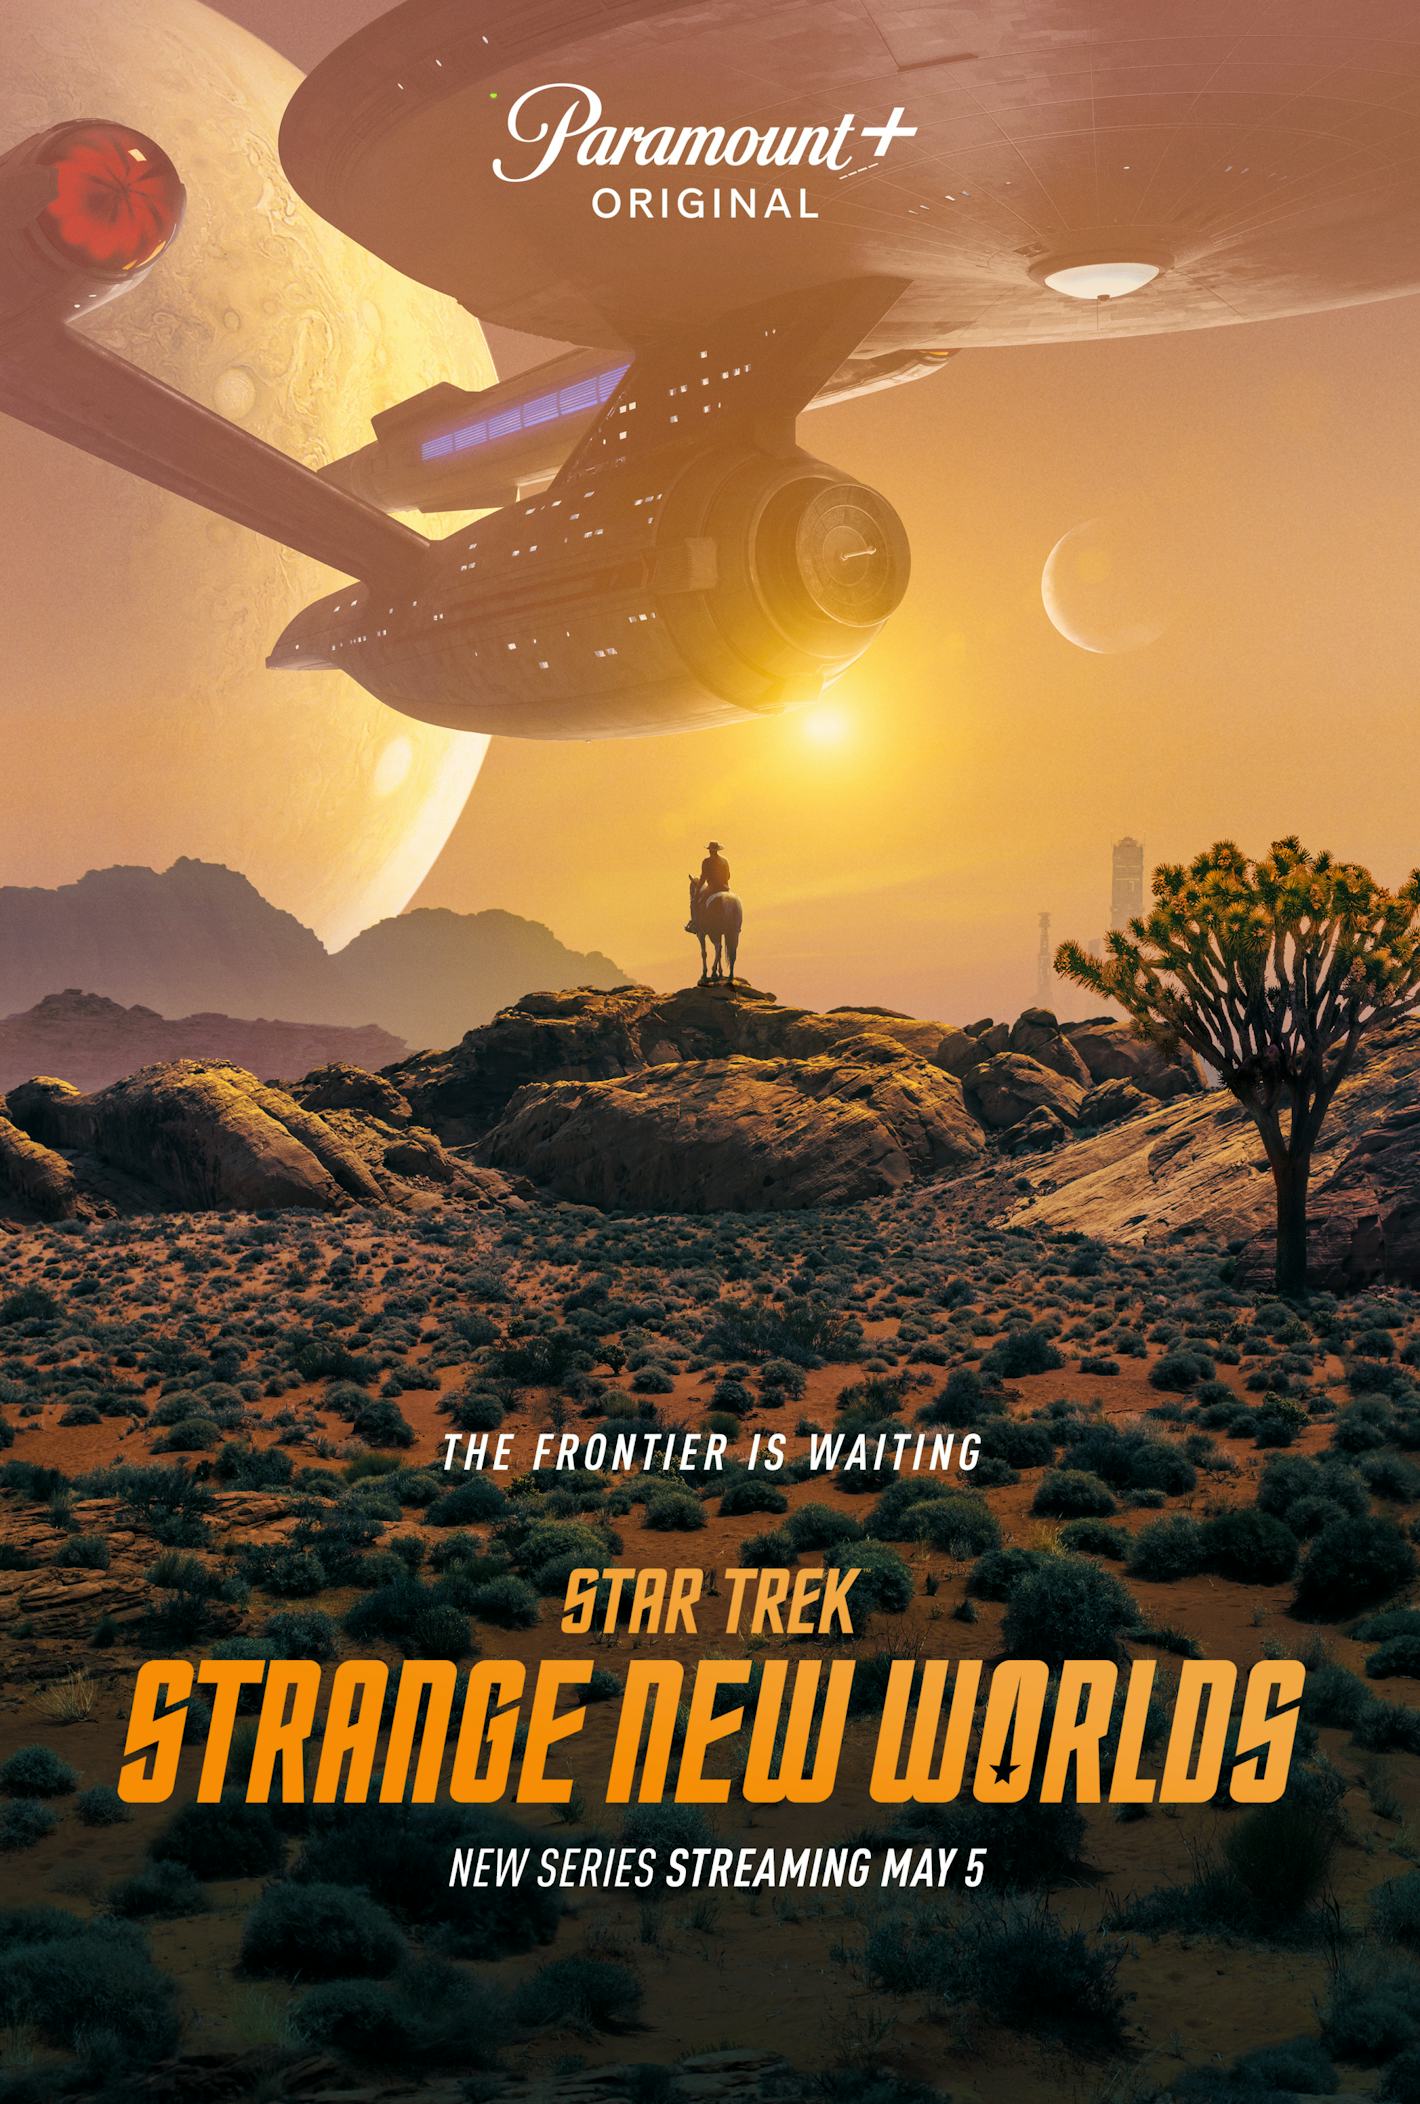 star trek strange new worlds season 3